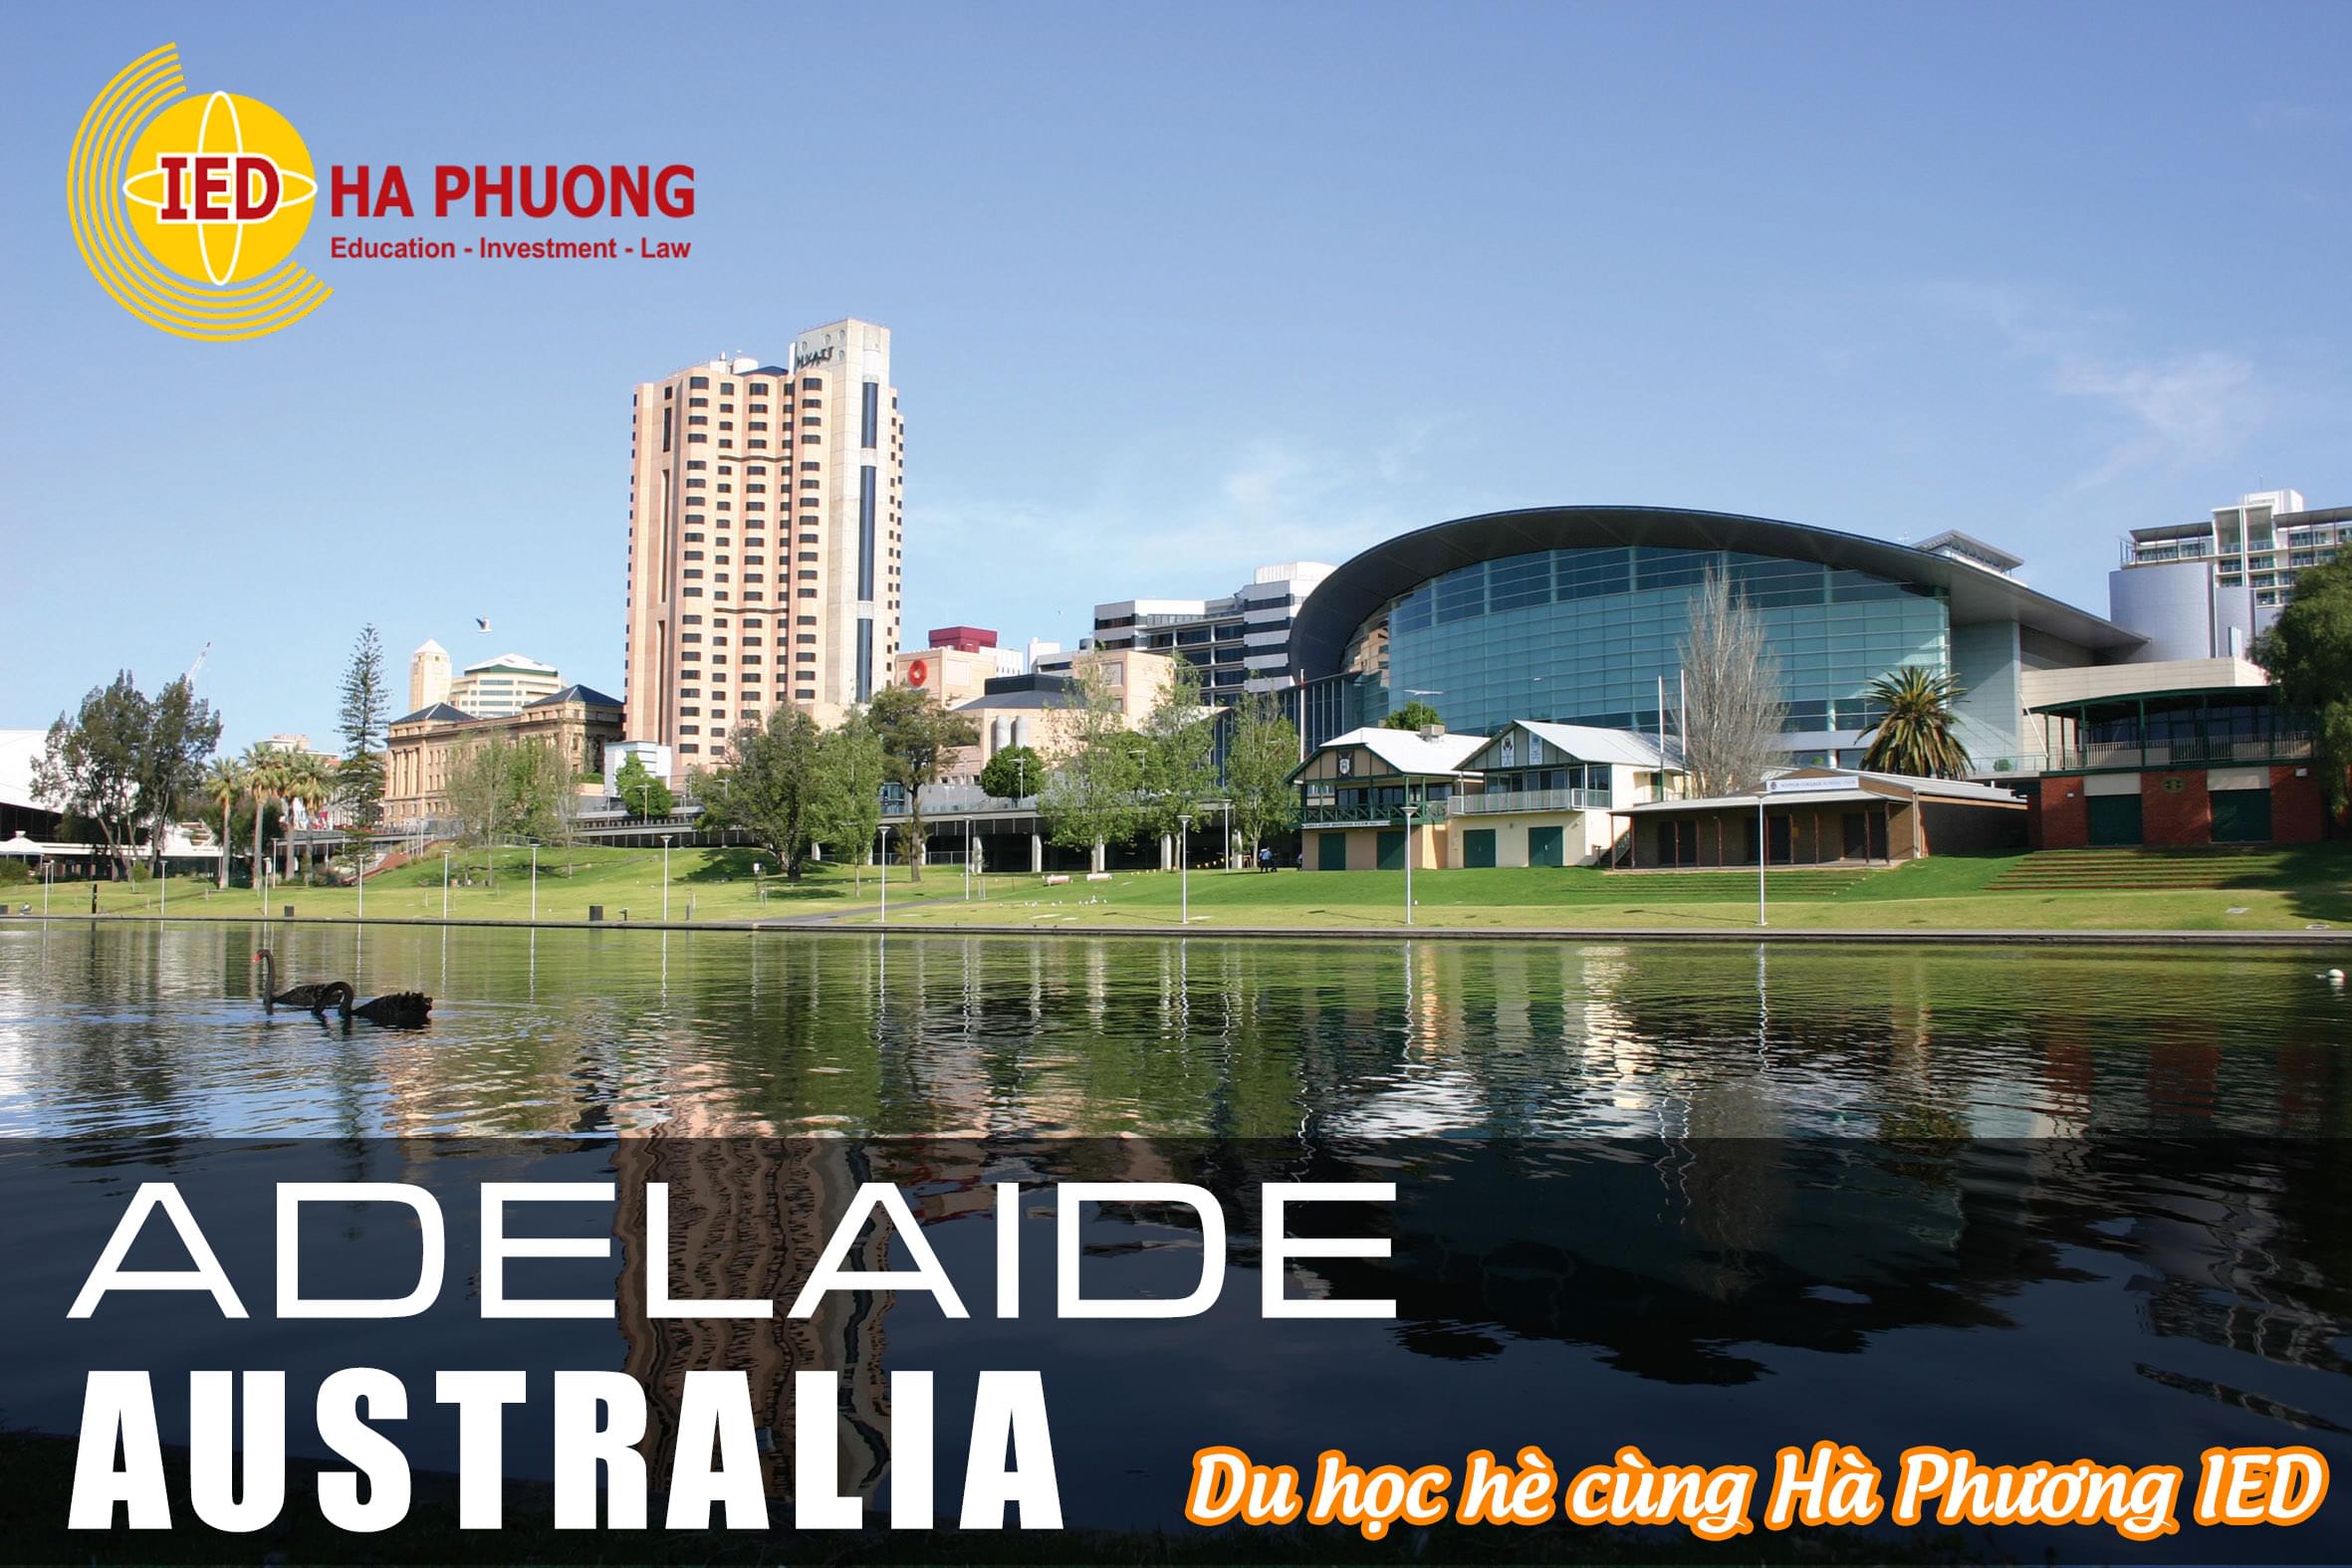 Du học hè Adelaide - Sydney Australia cùng Hà Phương IED